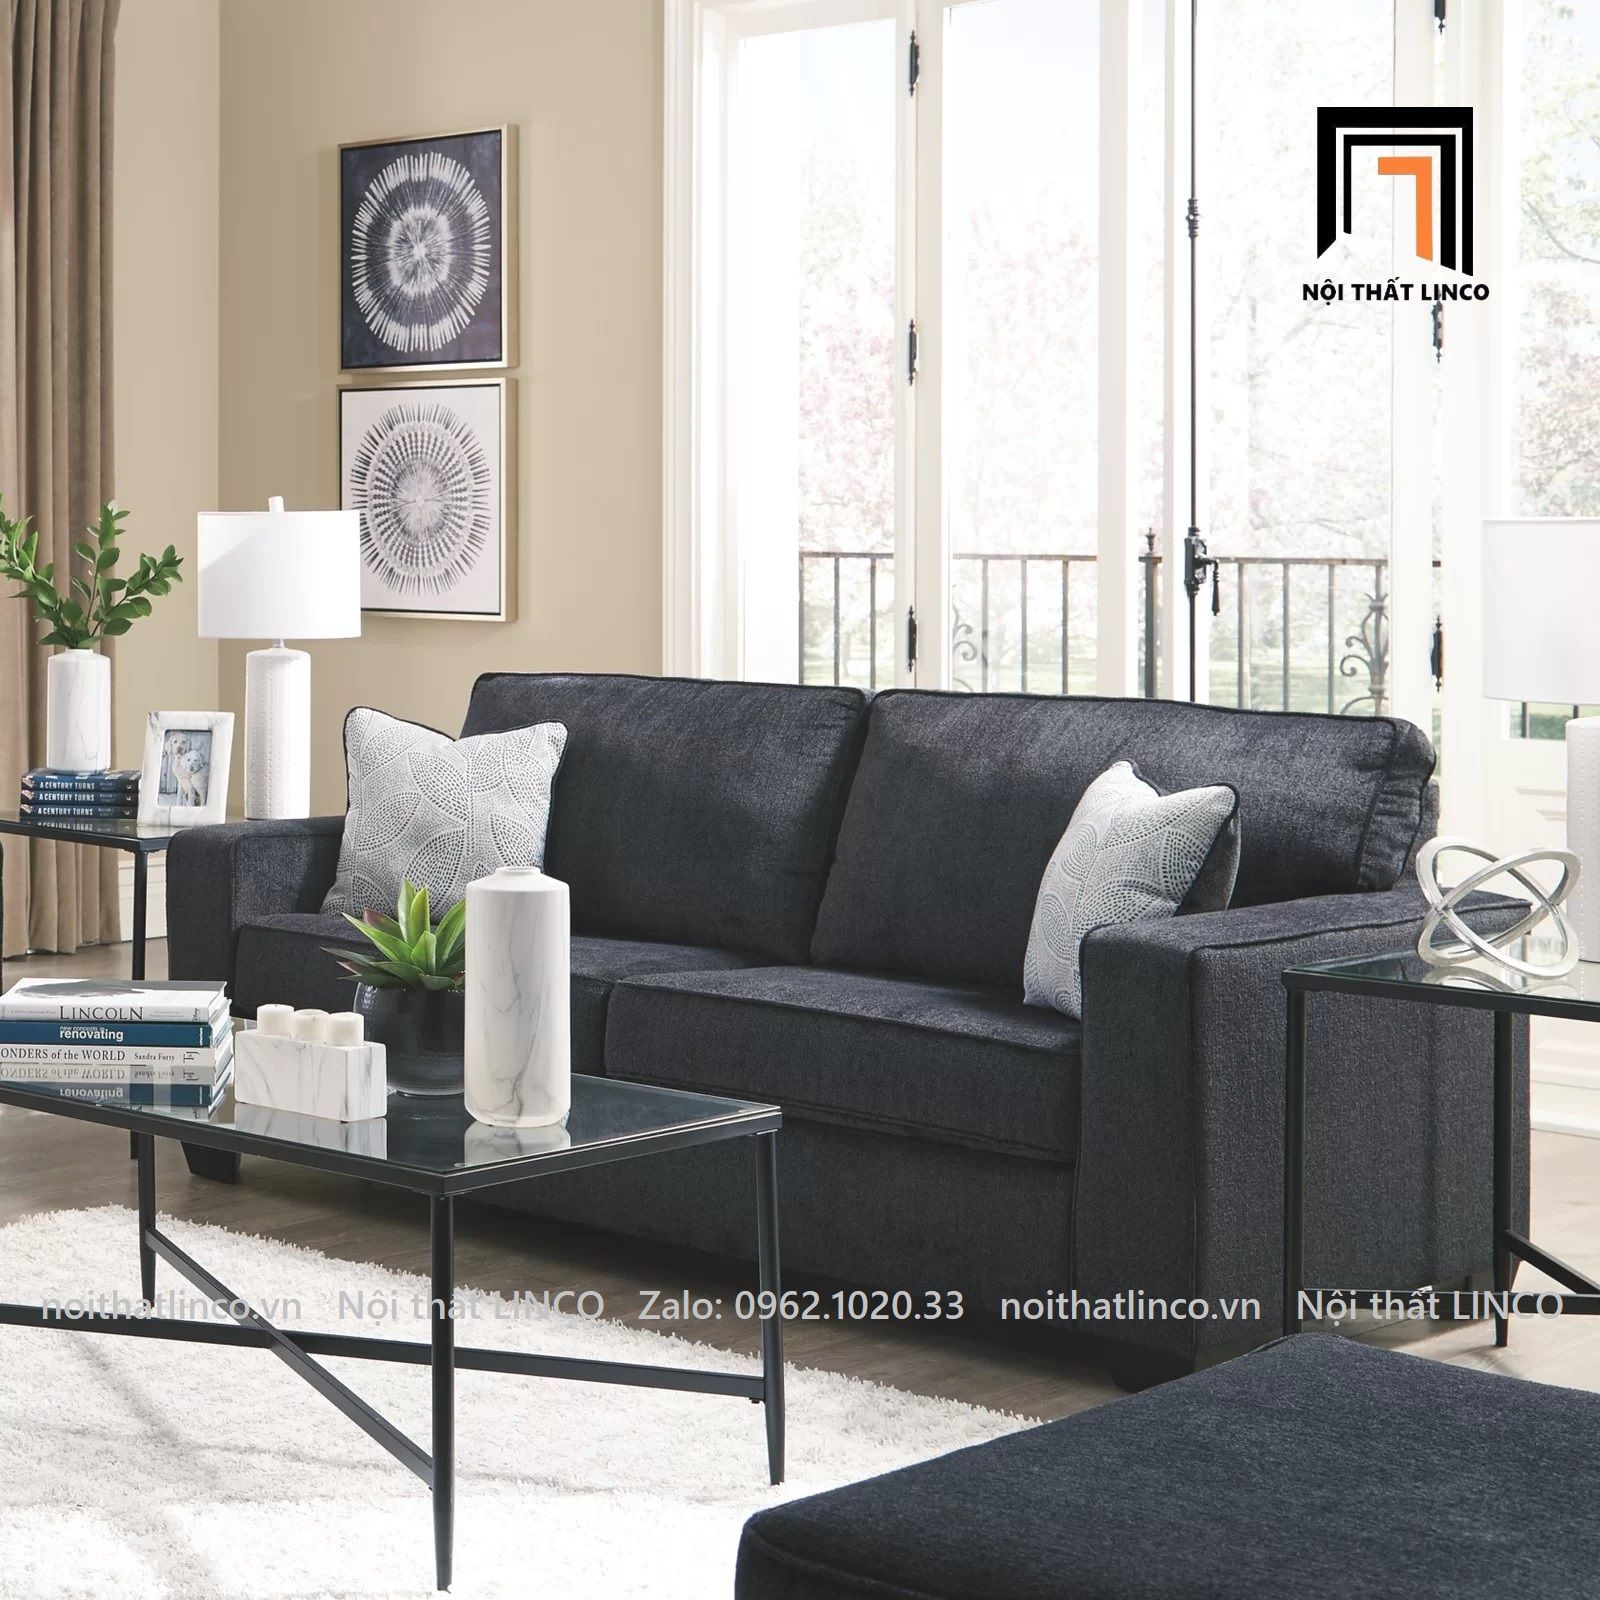  Ghế sofa băng thư giãn BT38-Rima dài 1m9 màu xám đen 